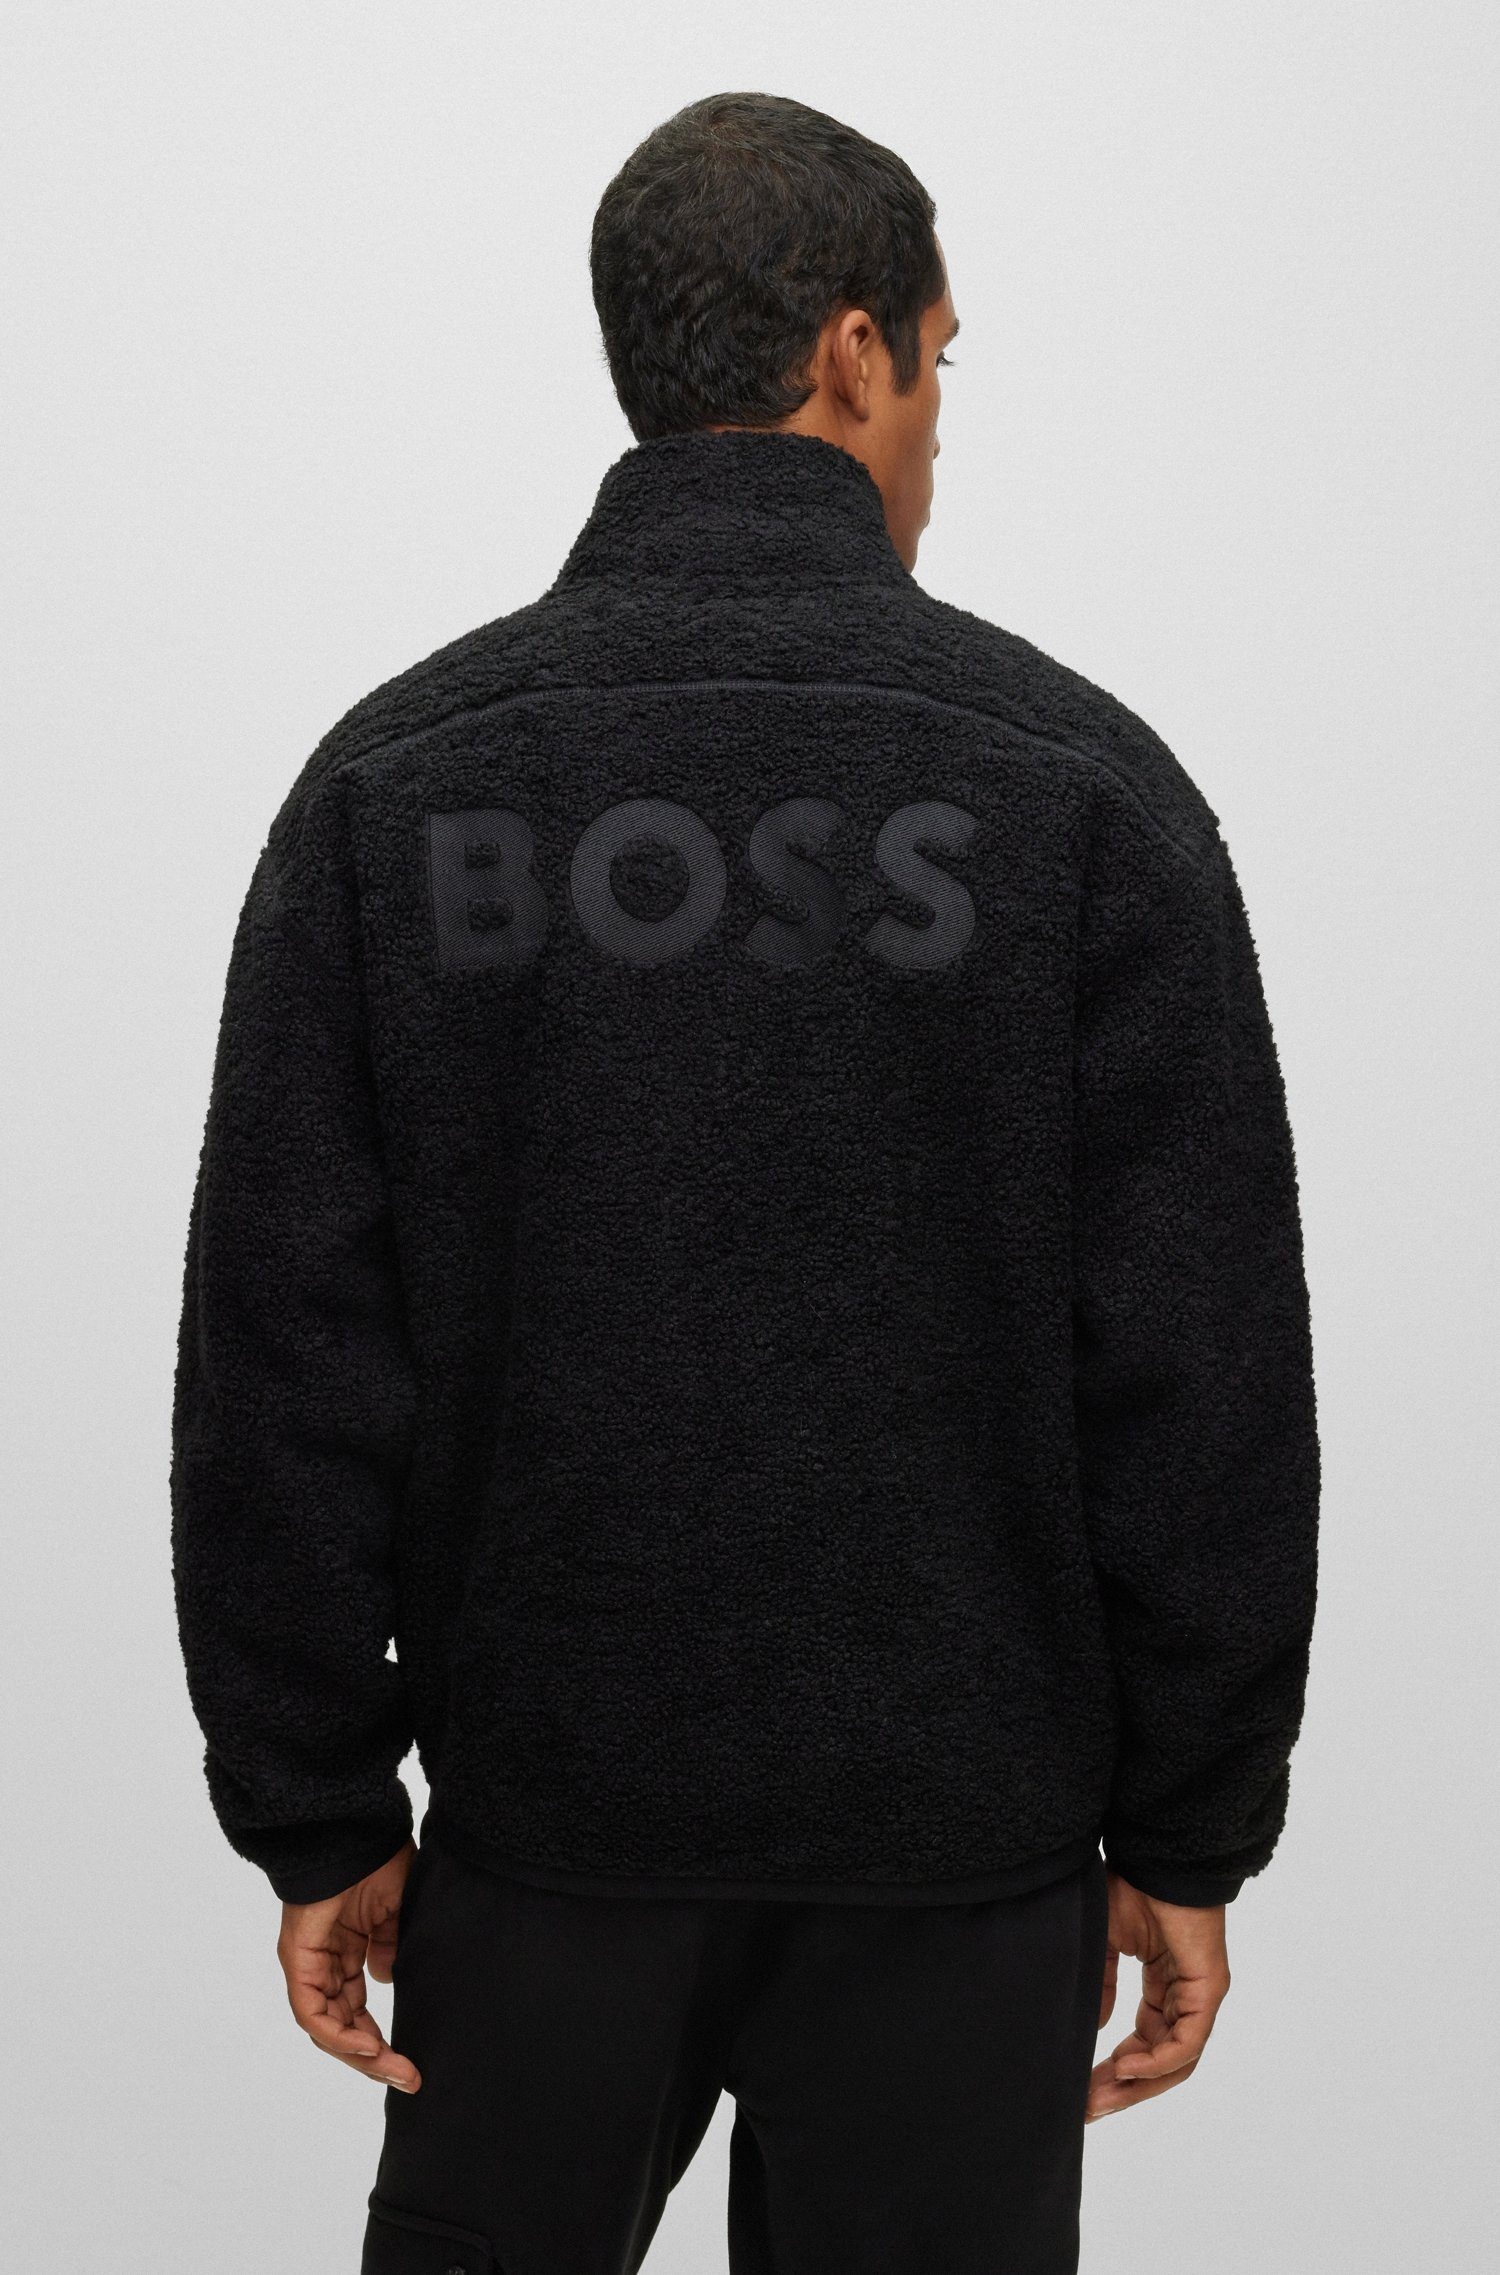 BOSS ORANGE 10239063 Stickerei Sweatshirt Black001 01 mit BOSS großer Rücken Zeteddy auf dem